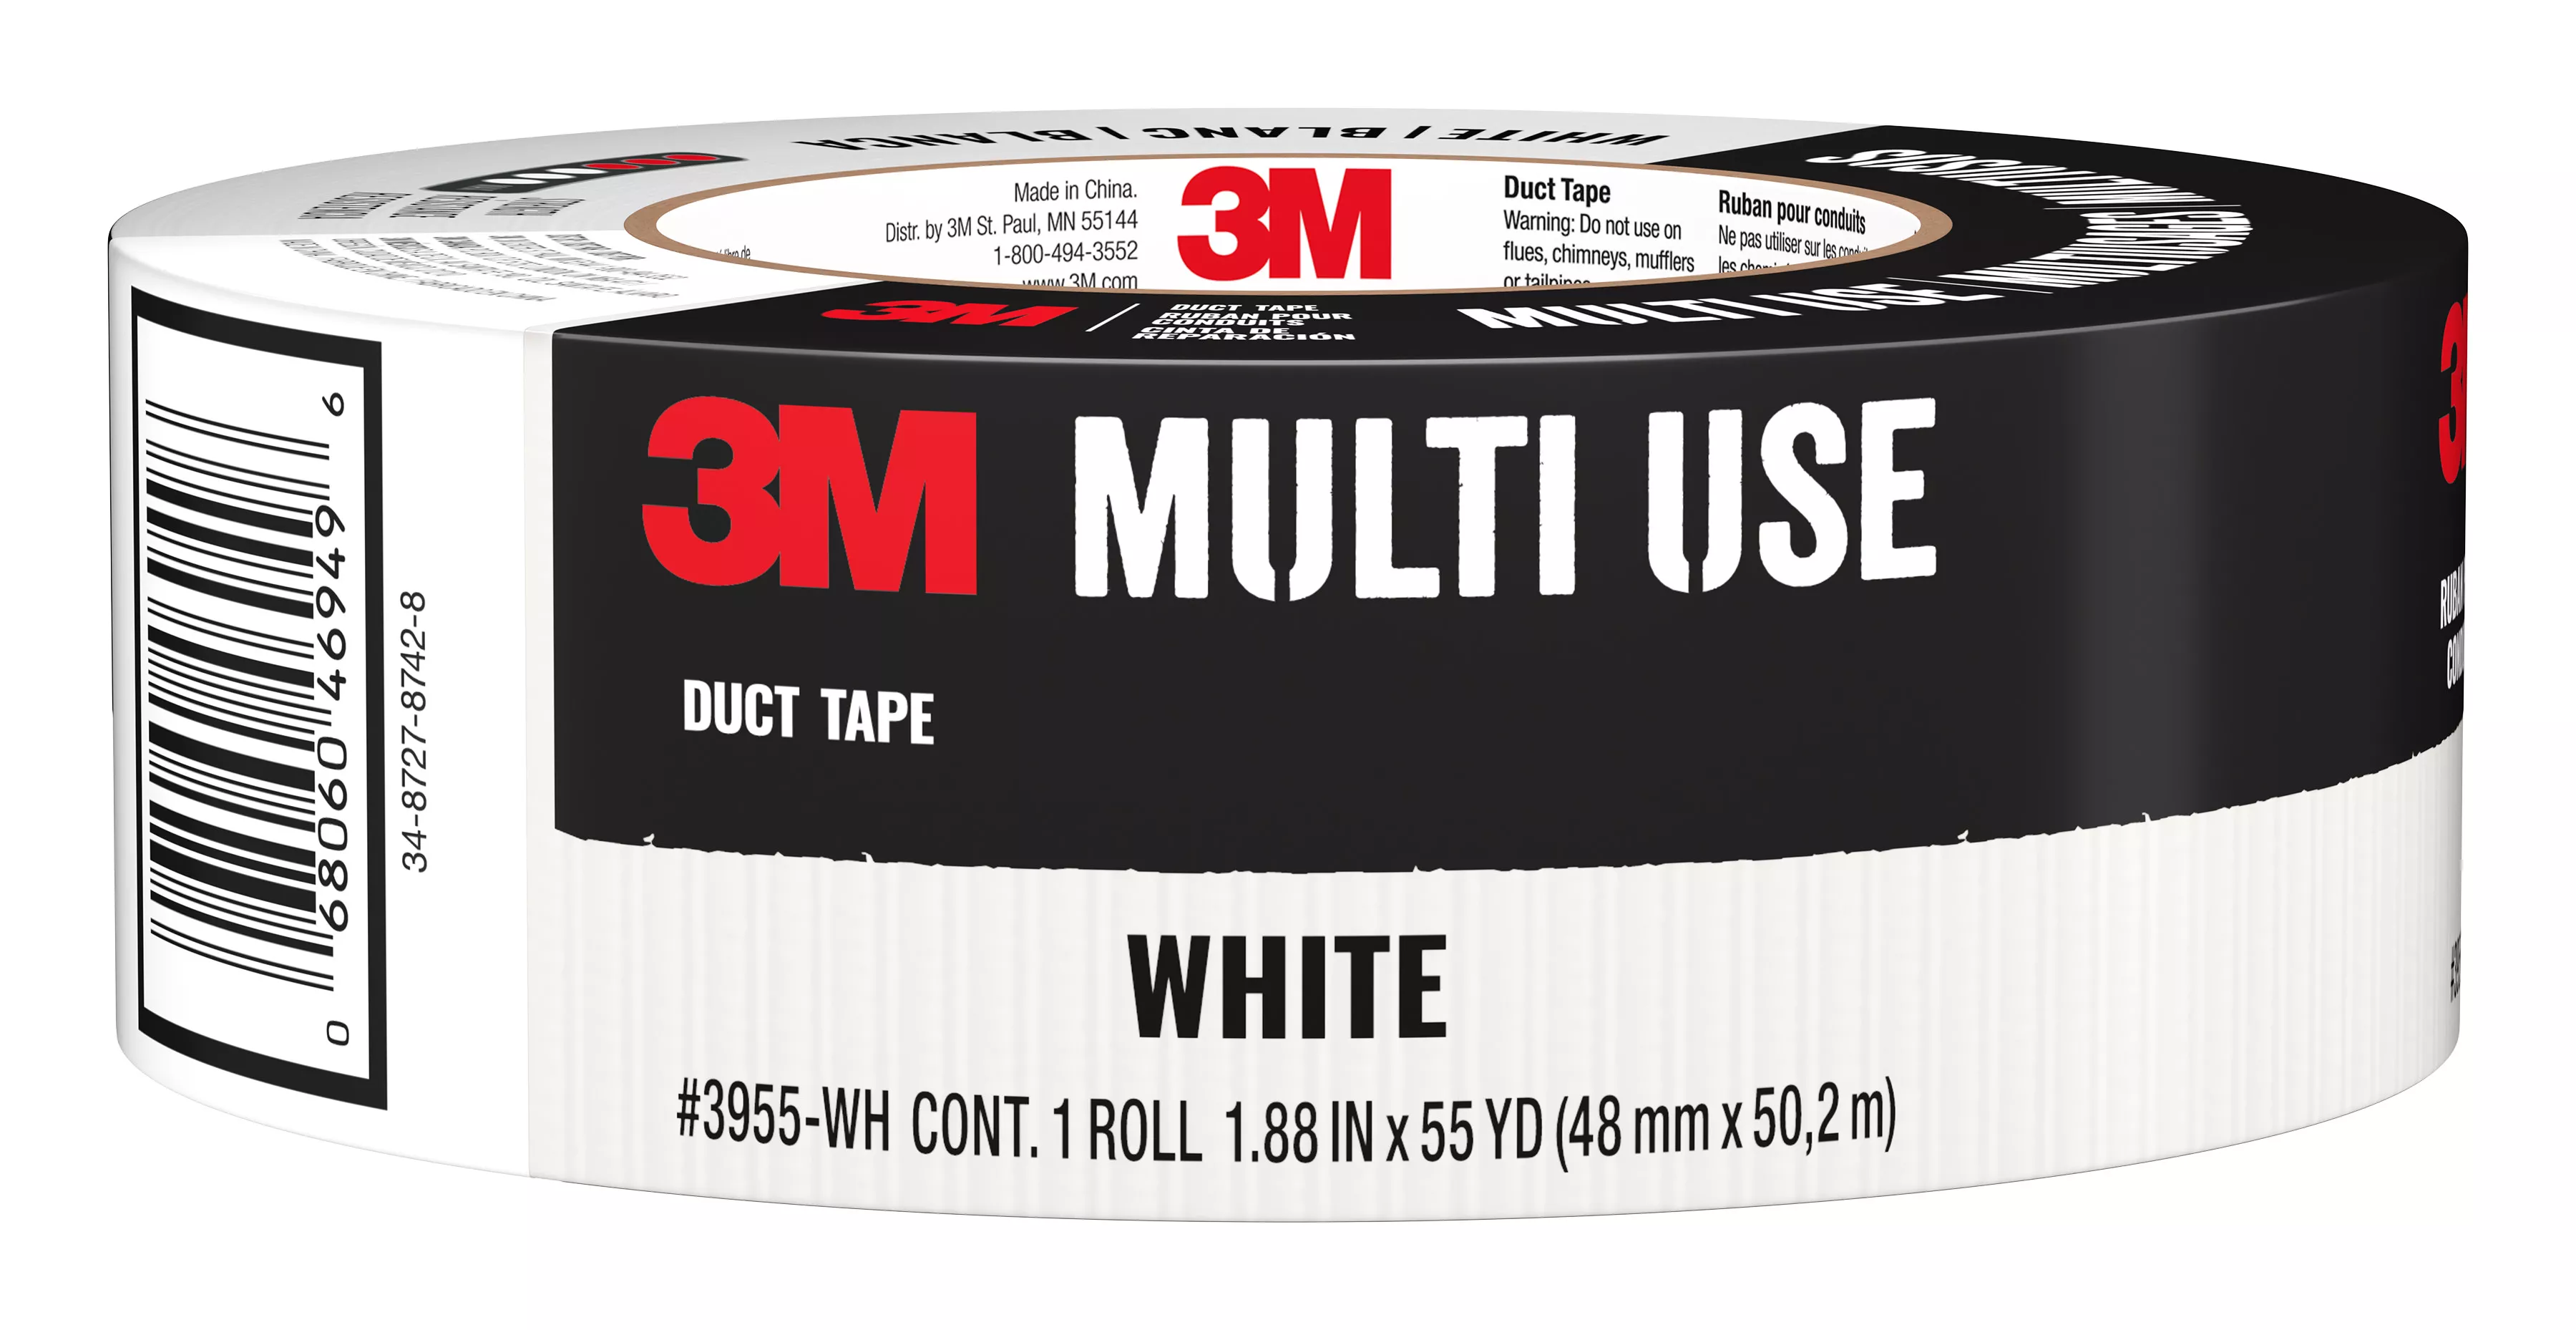 3M™ White Duct Tape 3955-WH, 1.88 in x 55 yd (48 mm x 50.2 m), 9 rls/cs